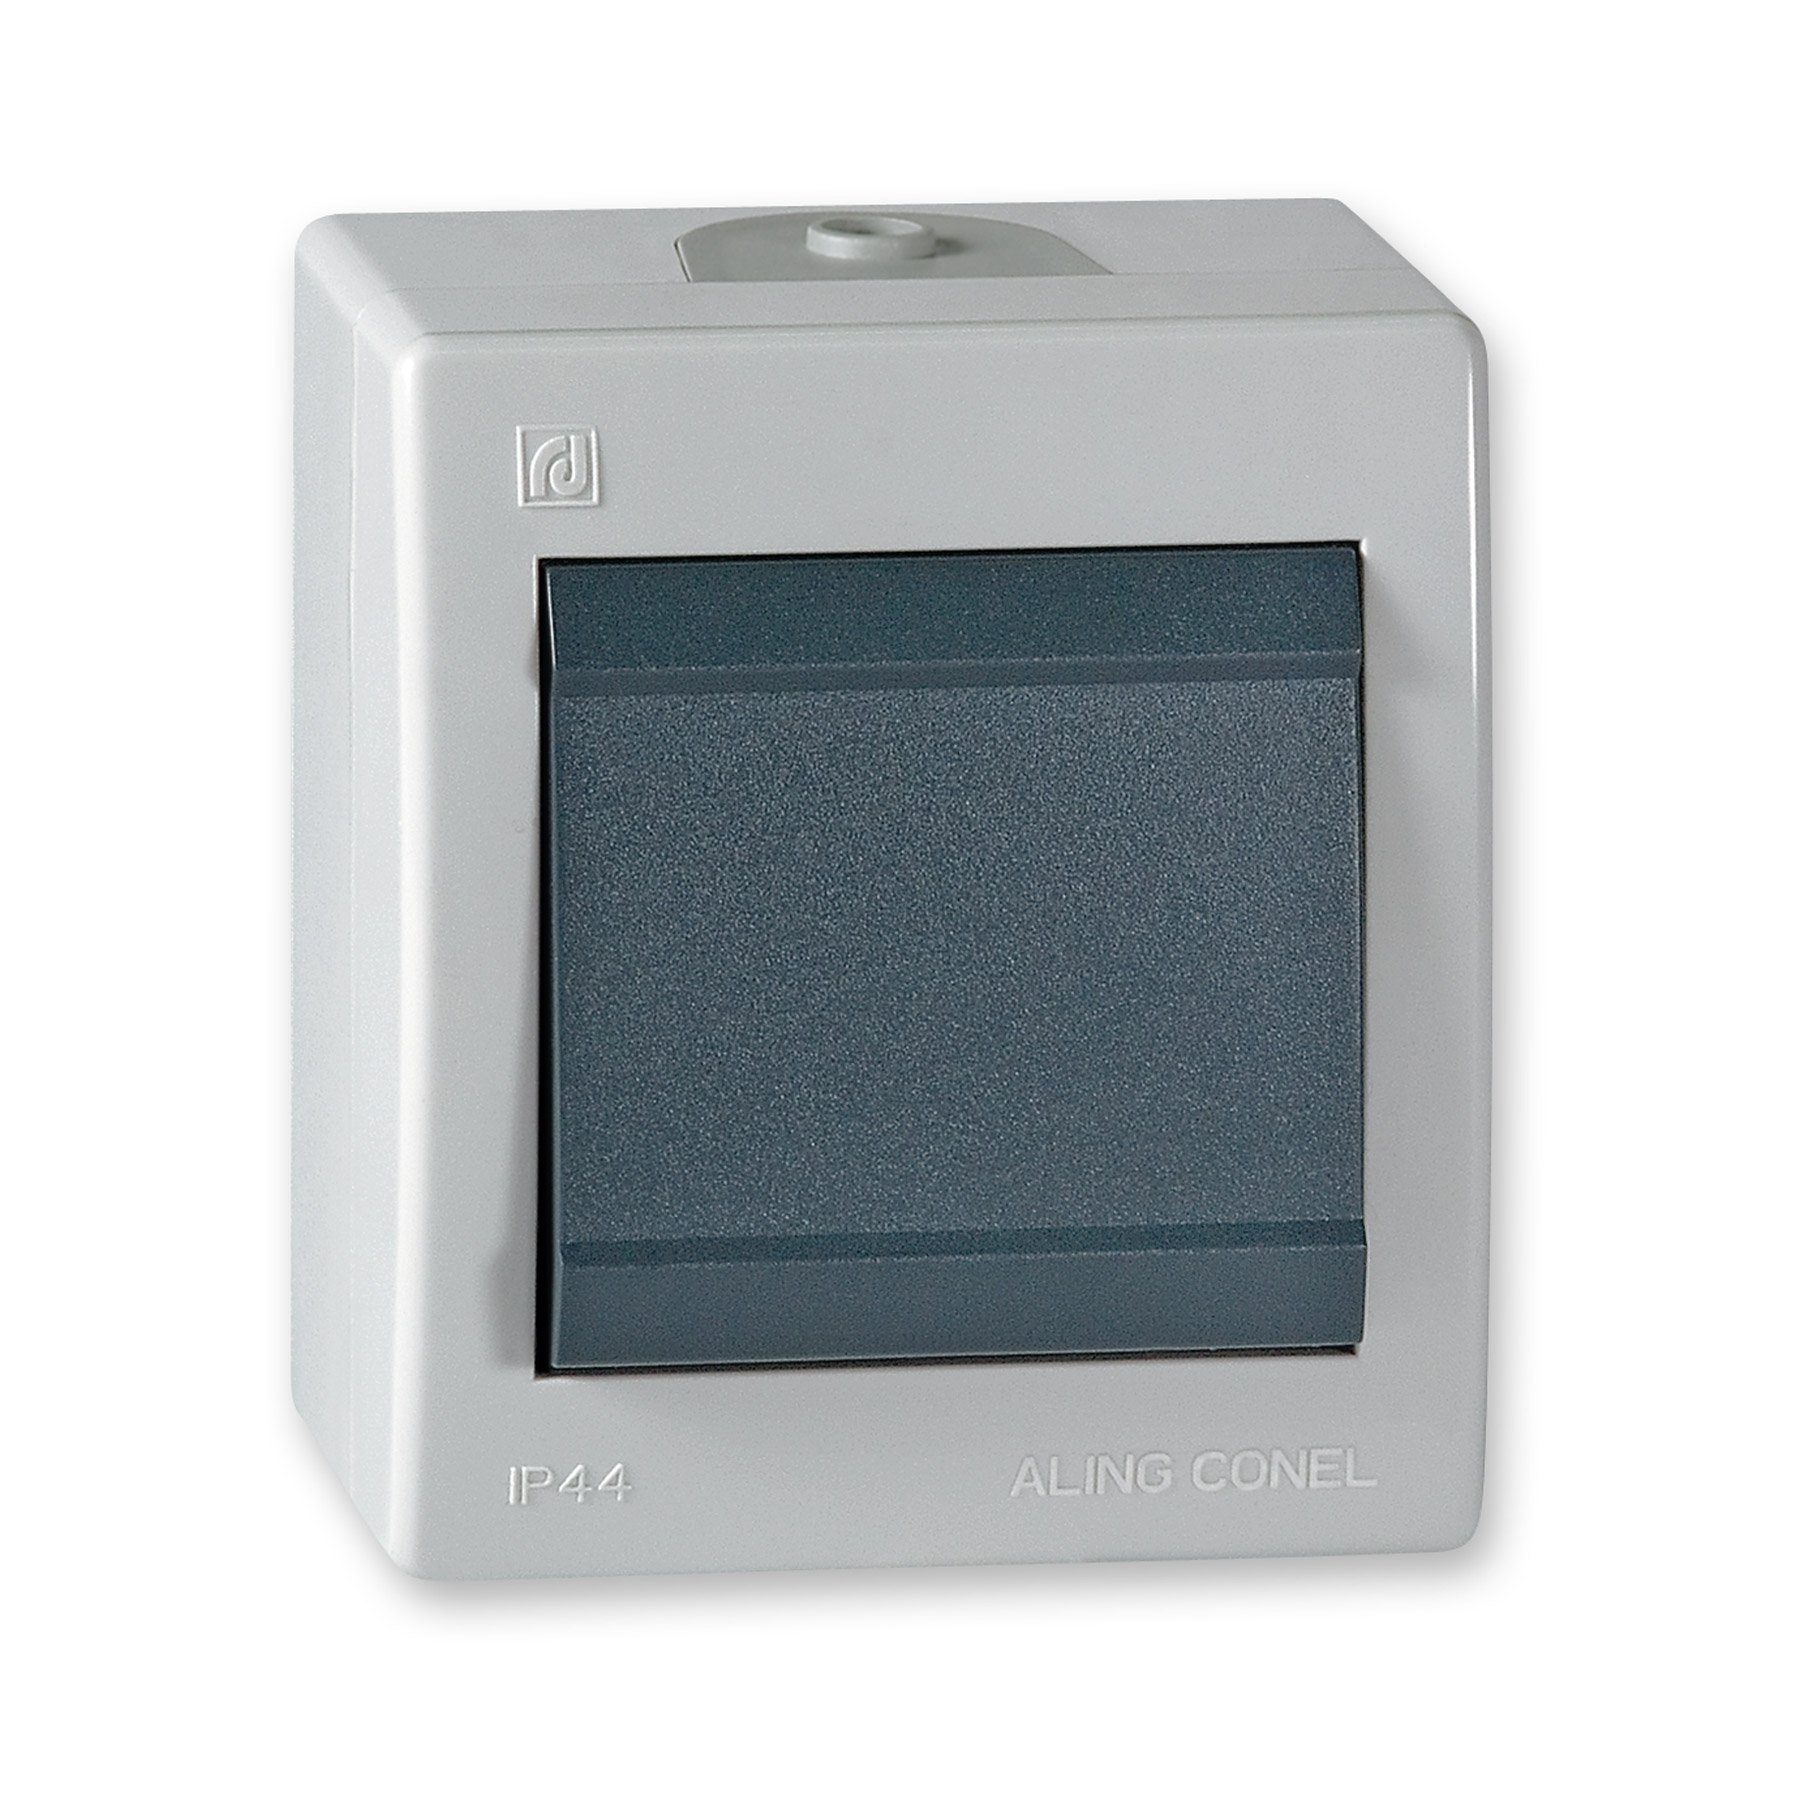 Glimmlampe grau Line Power Lichtschalter Conel IP Aufputz-Schalter 44 Aling ohne (Packung),